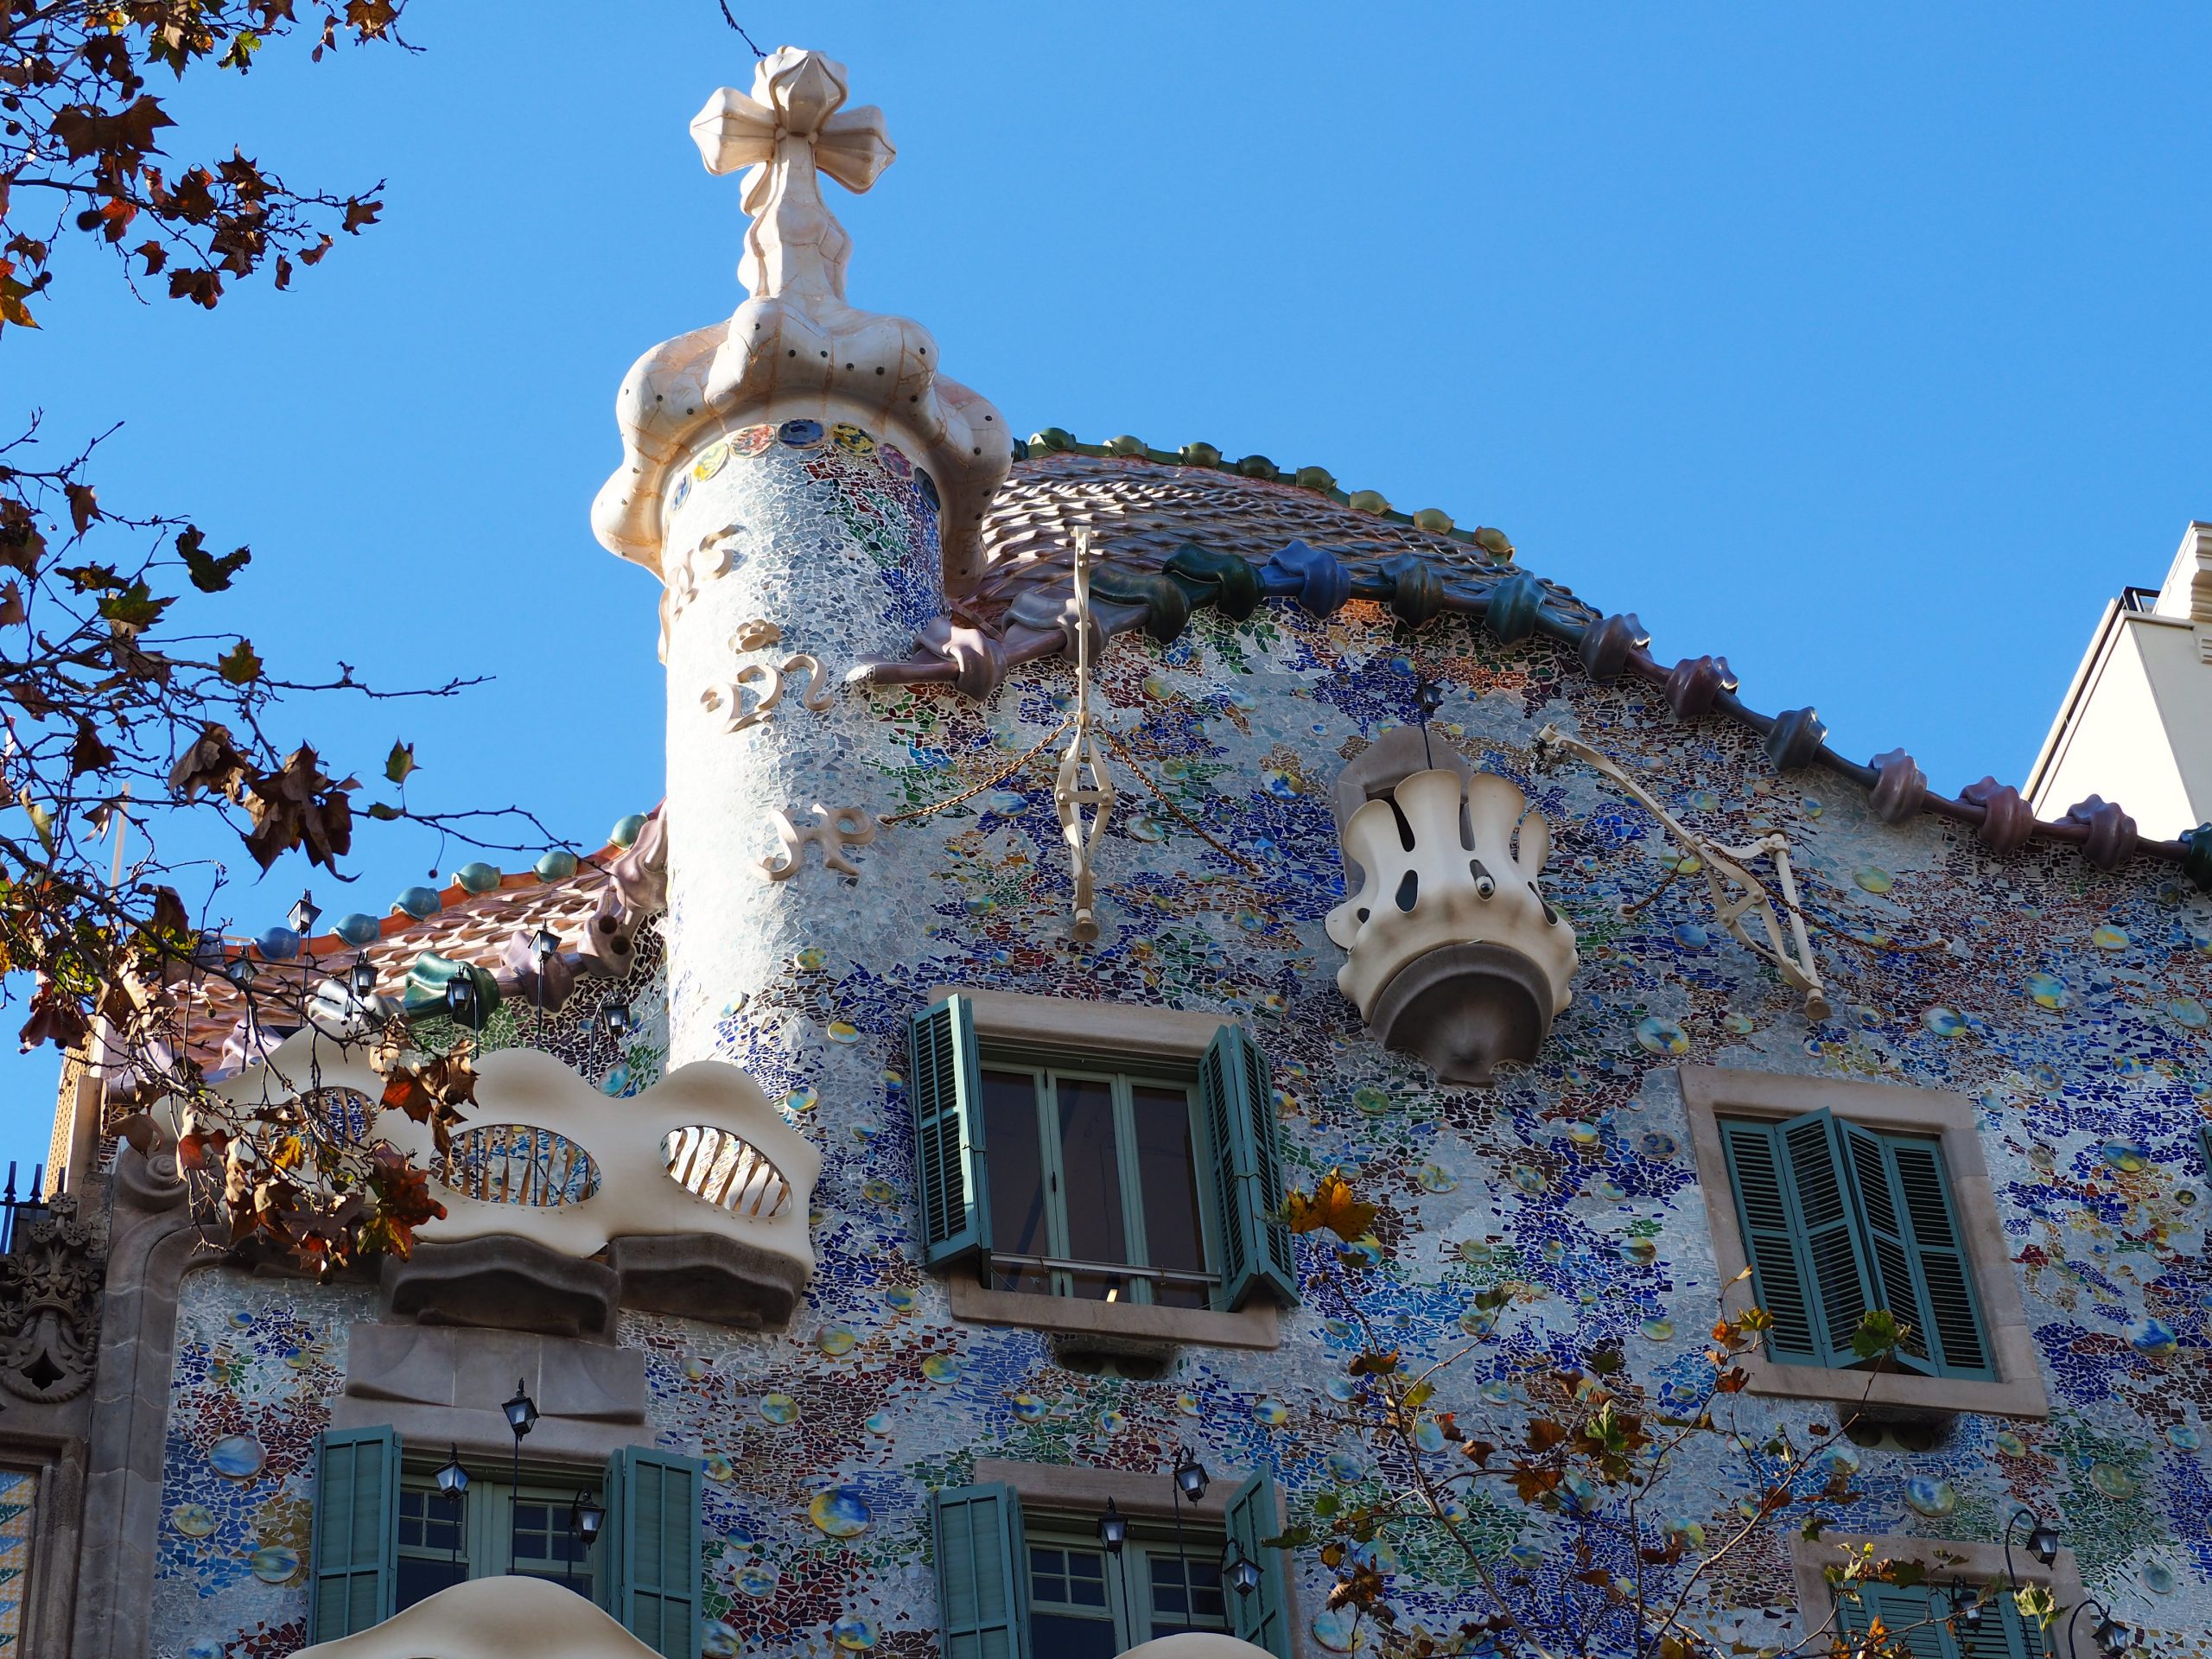 Toit de la maison Batlló, façade exterior. Passeig de Gràcia, visite guidée de Barcelone.